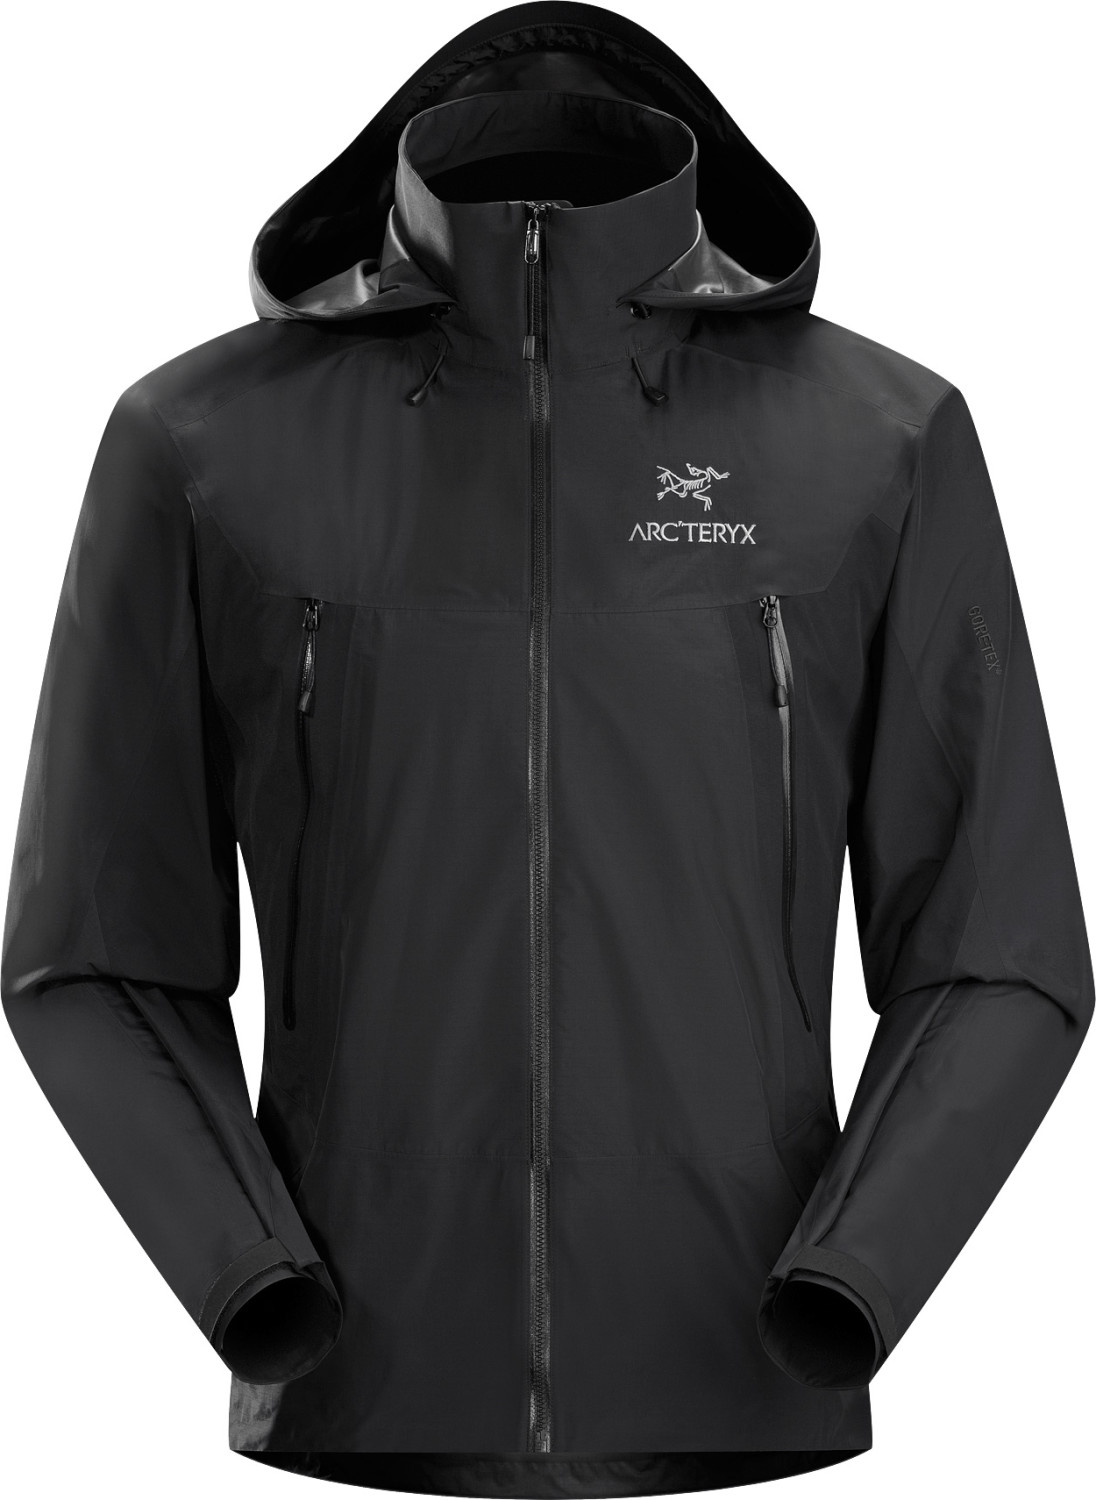 Arc'teryx Beta LT Hybrid Jacket Men's ab 499,95 € (April 2021 Preise